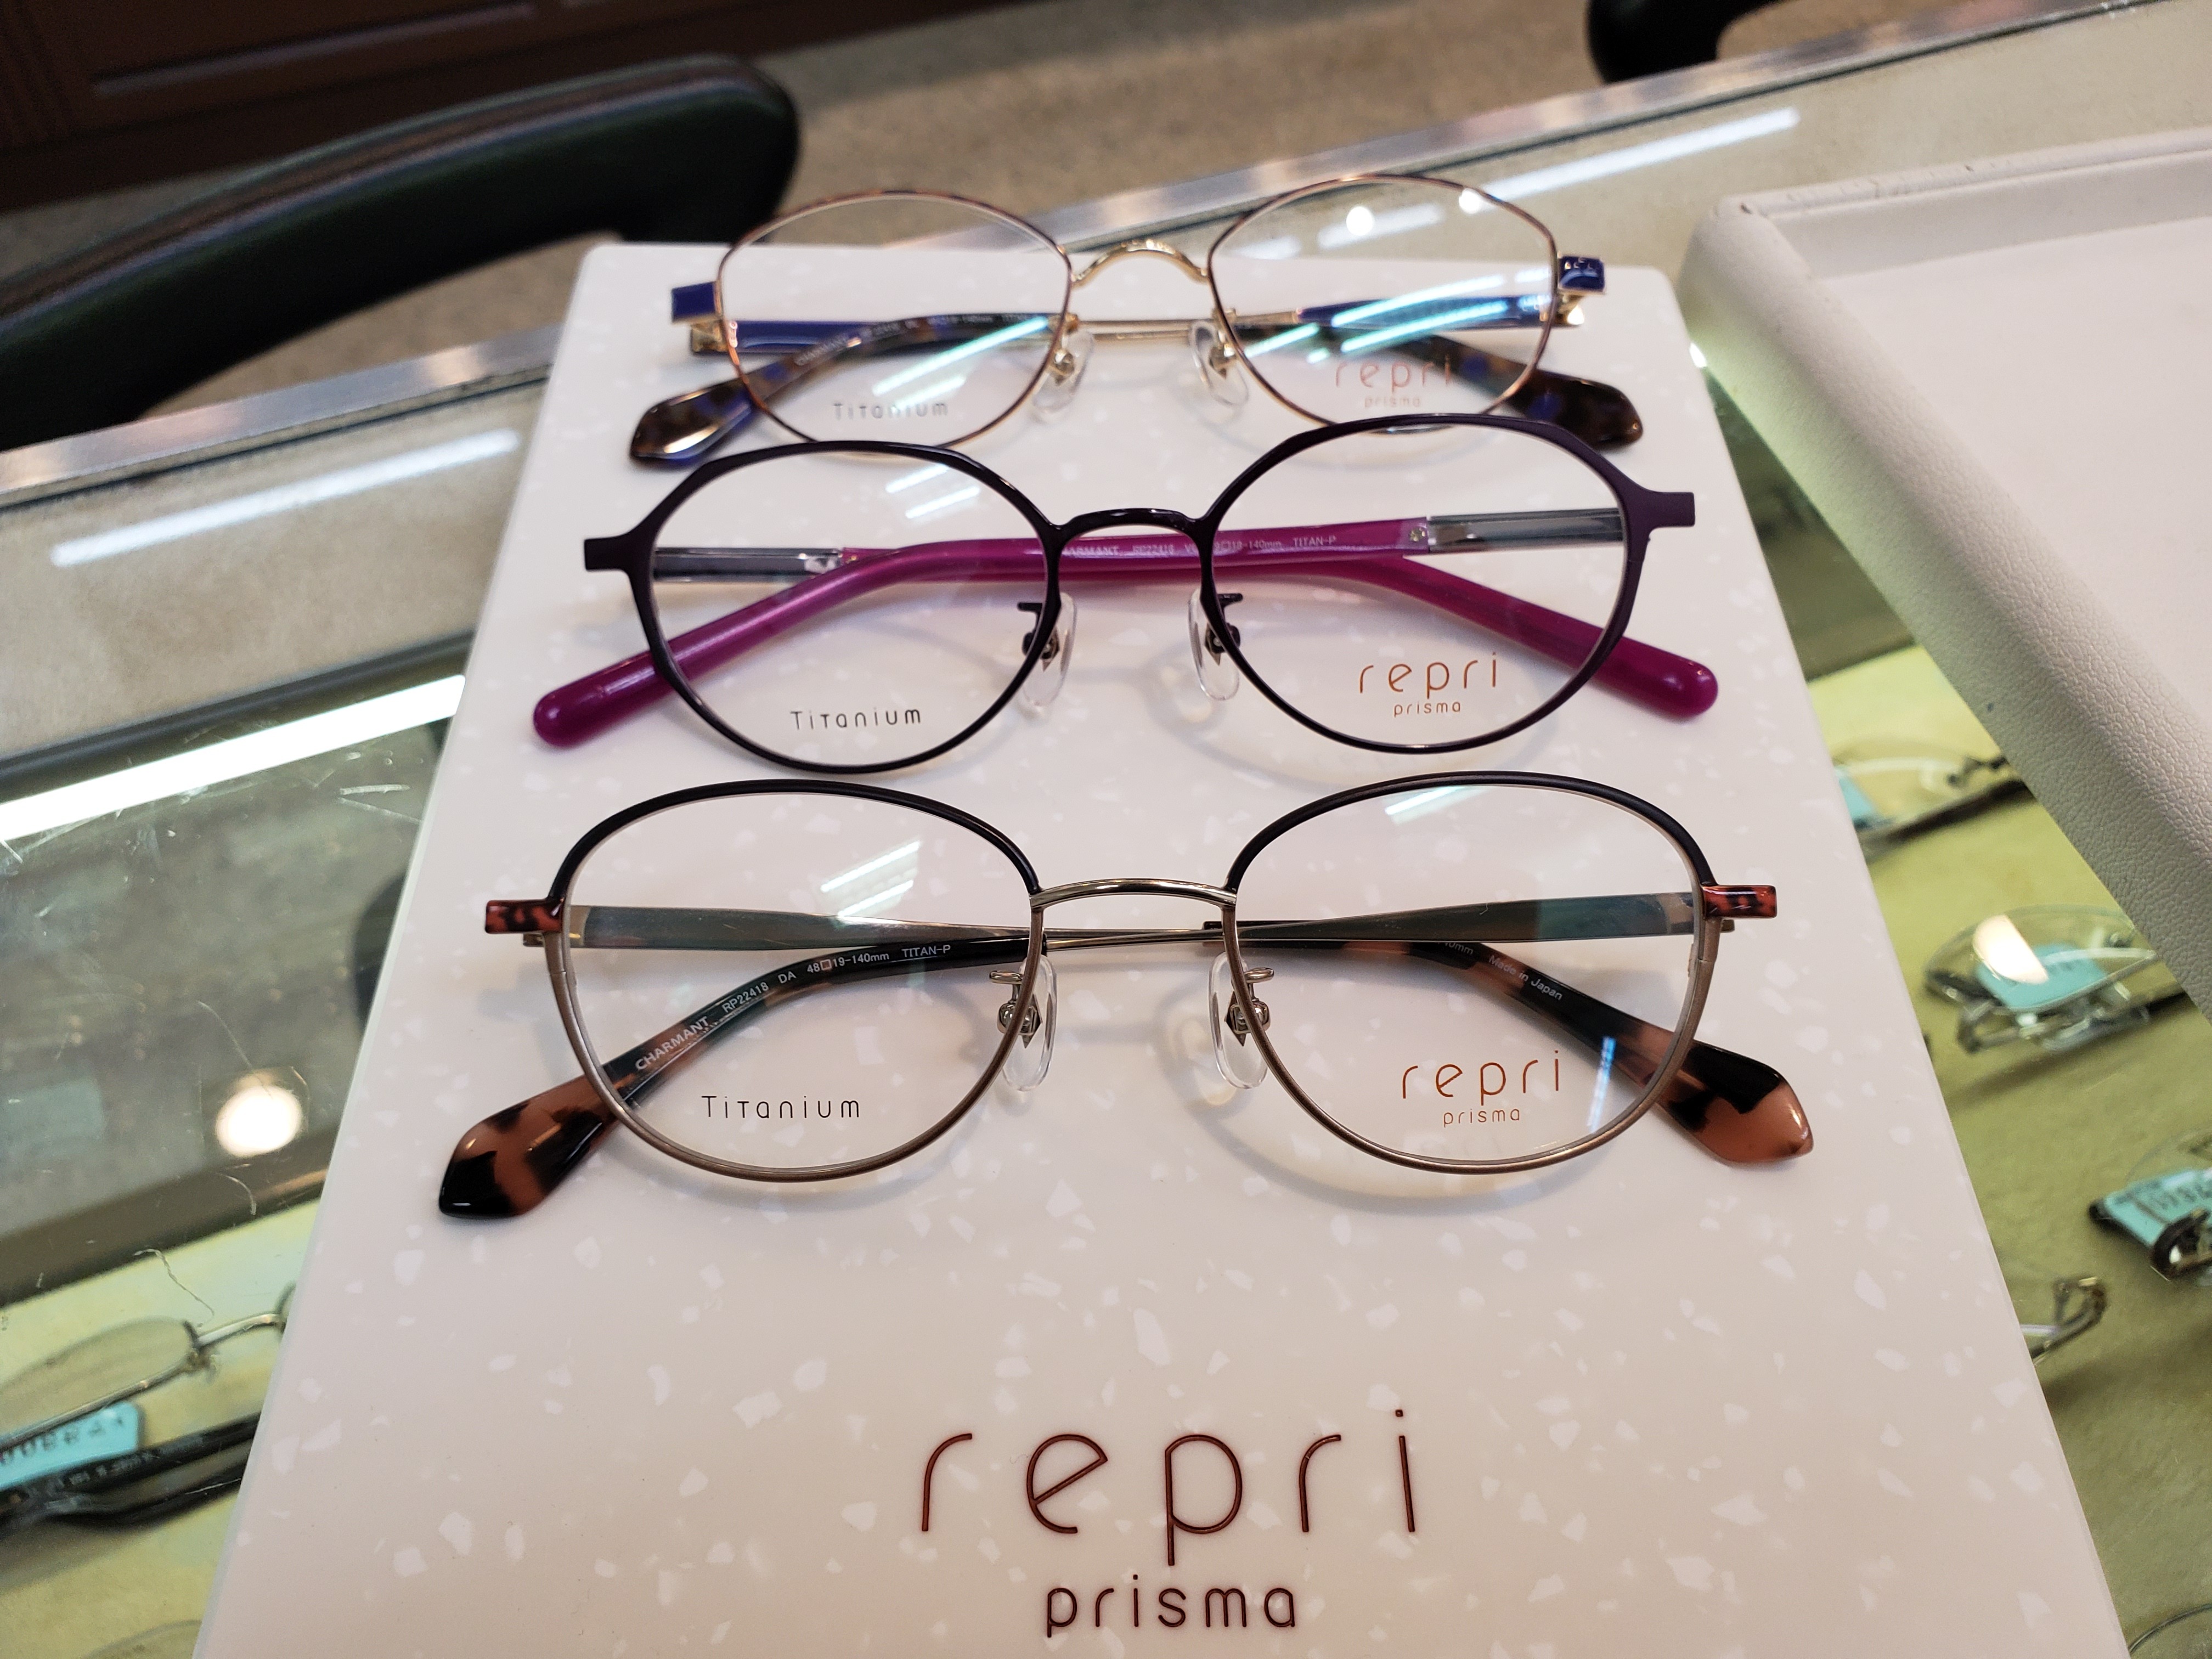 repri prisma(レプリ プリズマ)入荷！: メガネのプロ カナイメガネ